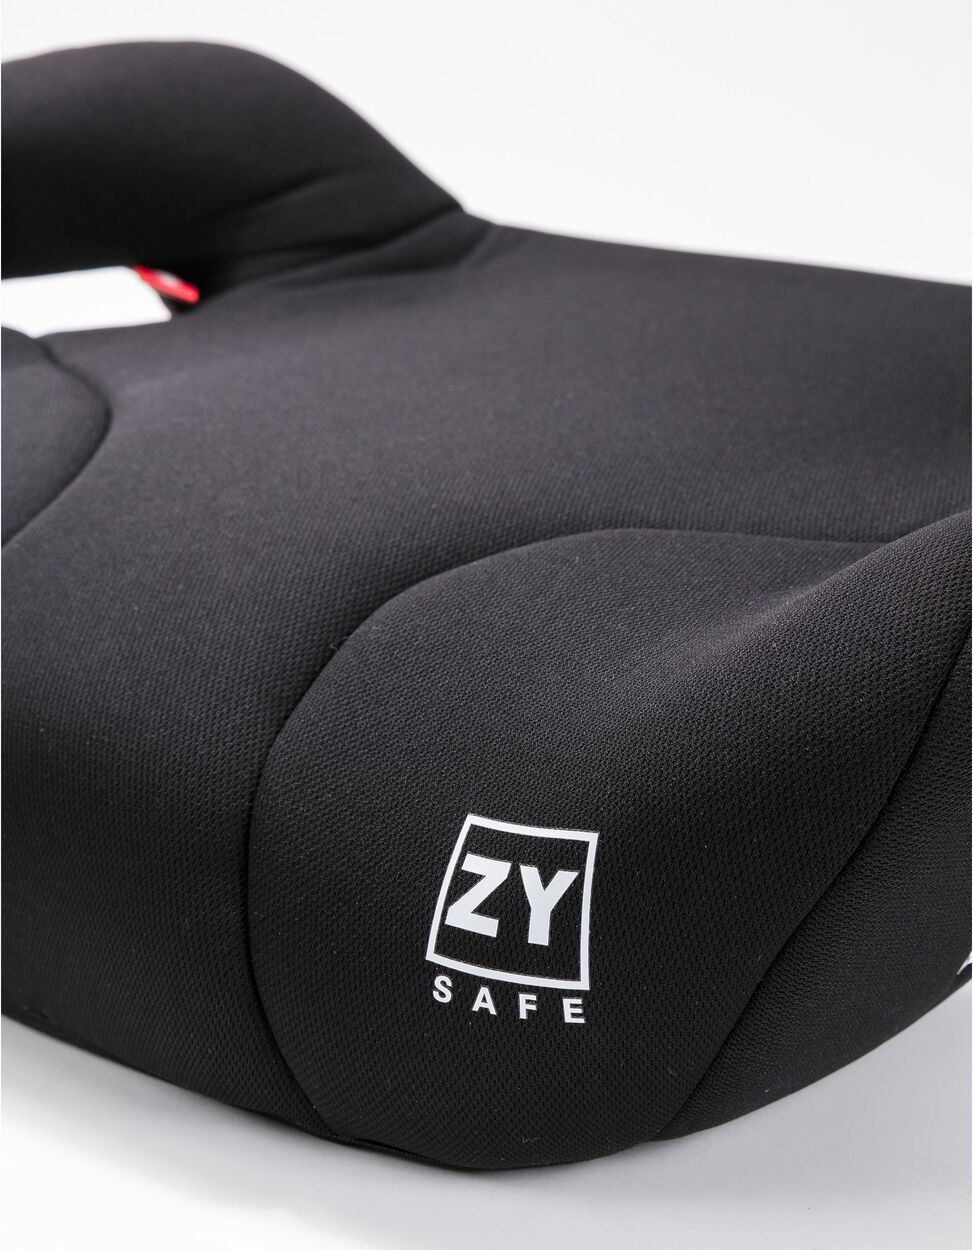 Assento Auto Elevatório Zy Safe Black